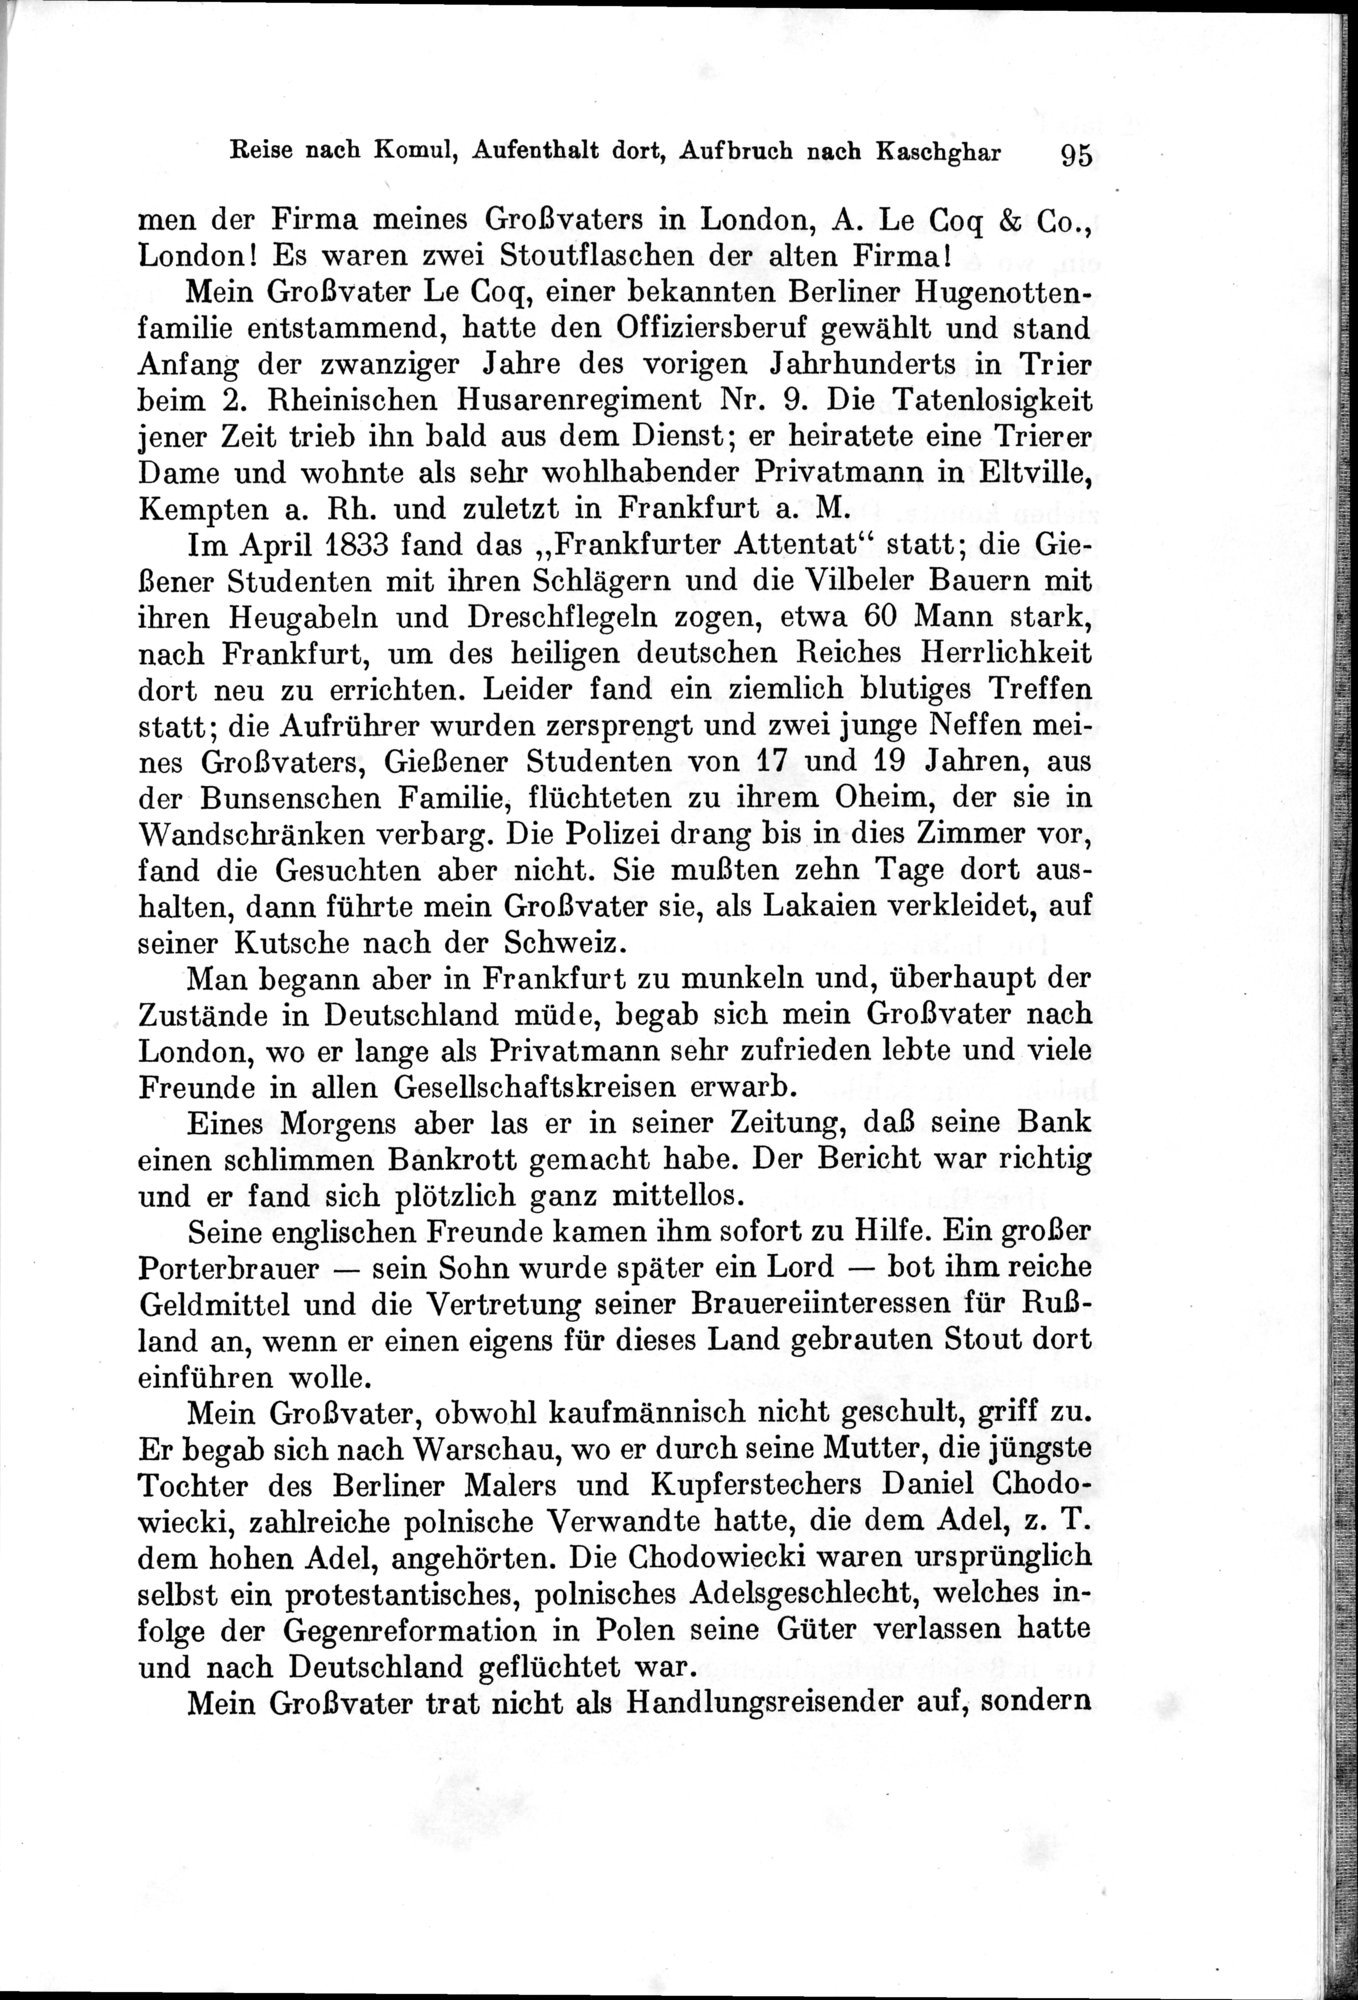 Auf Hellas Spuren in Ostturkistan : vol.1 / Page 139 (Grayscale High Resolution Image)